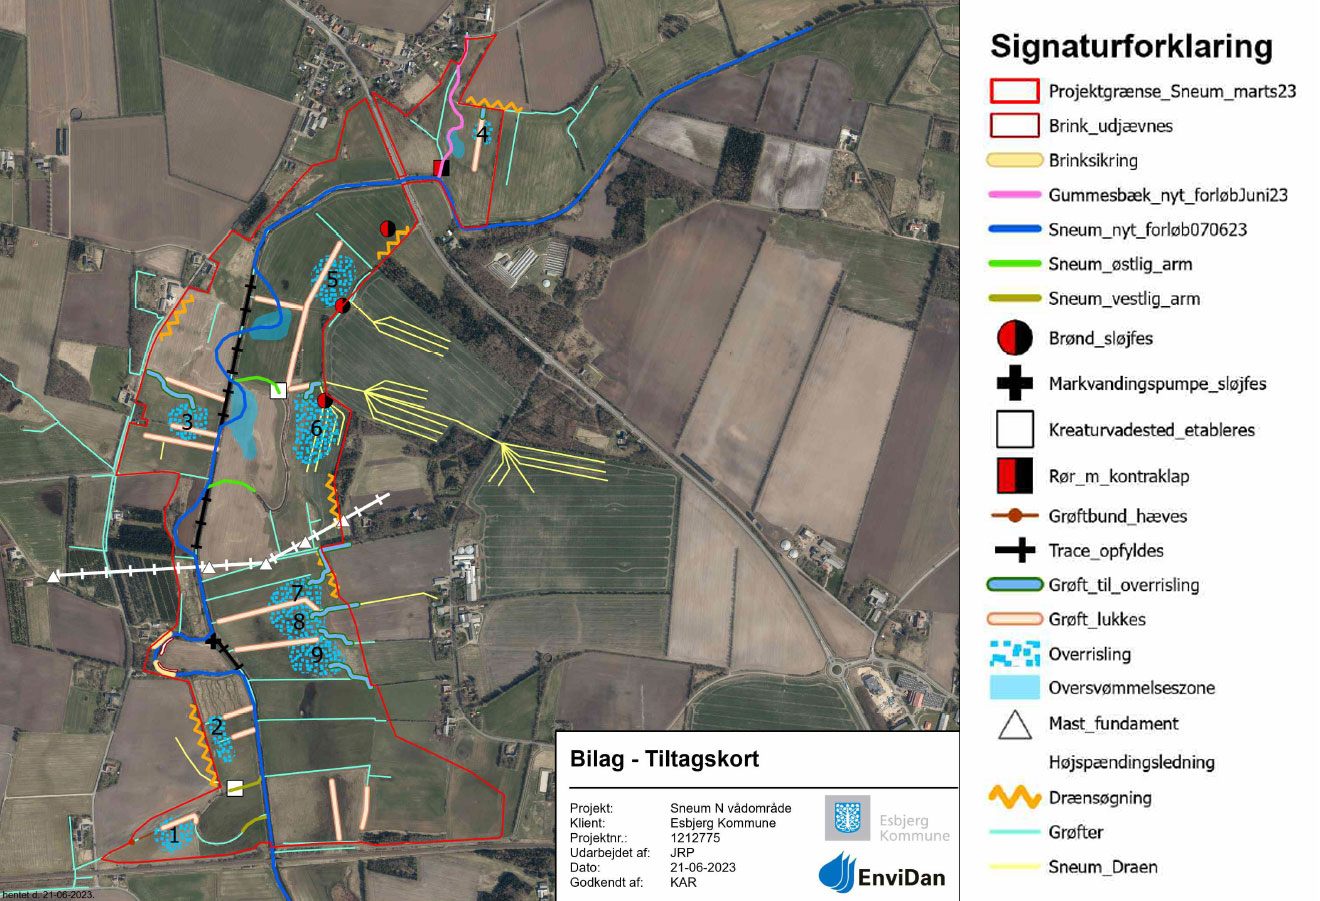 Kortoversigt over projektområdet Sneum 2021 og de planlagte tiltag.